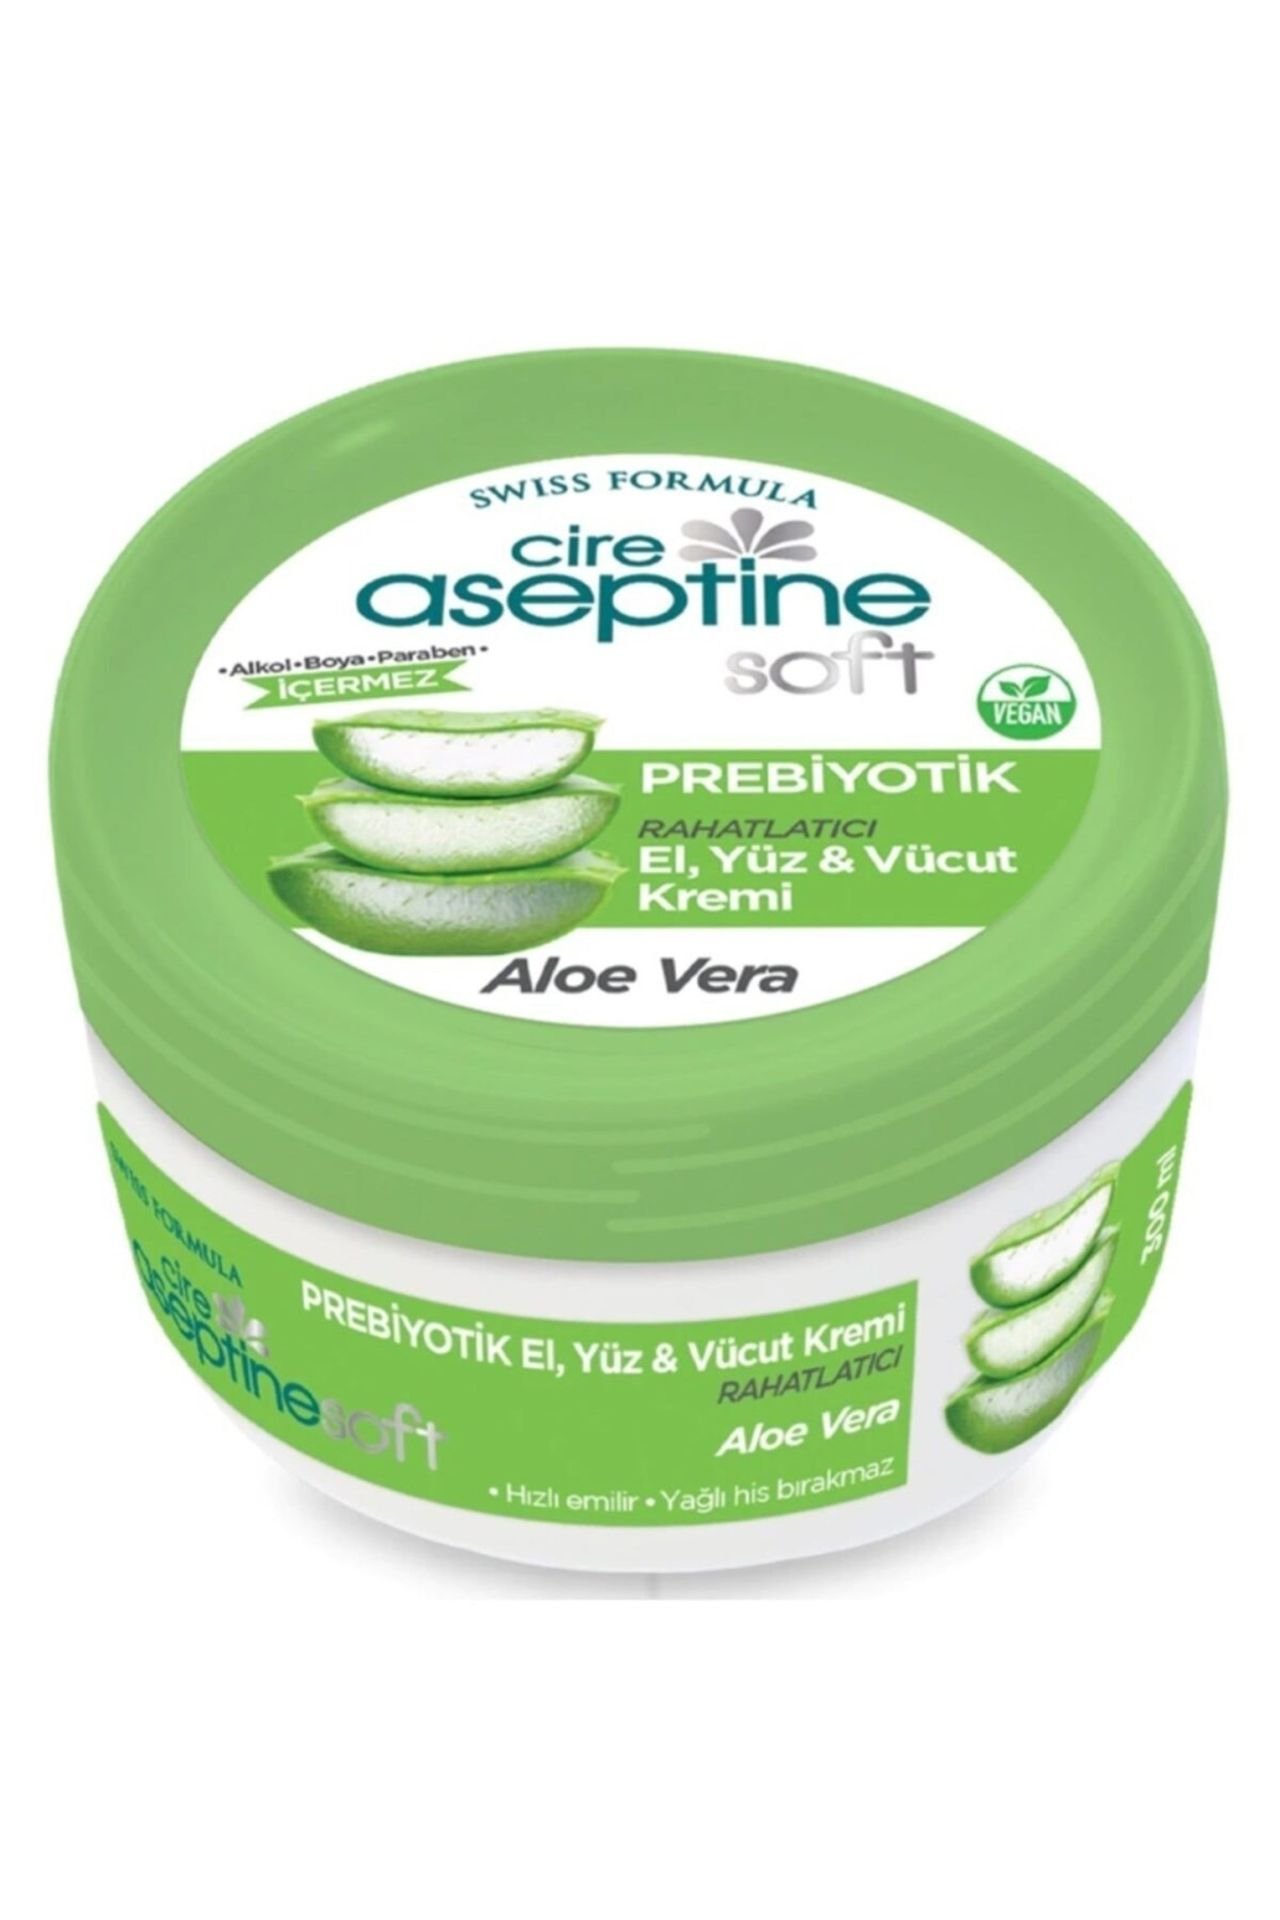 Cire Aseptine Soft Aloe Vera Özlü Yatıştırıcı Besleyici Prebiyotikli Krem 100 ml